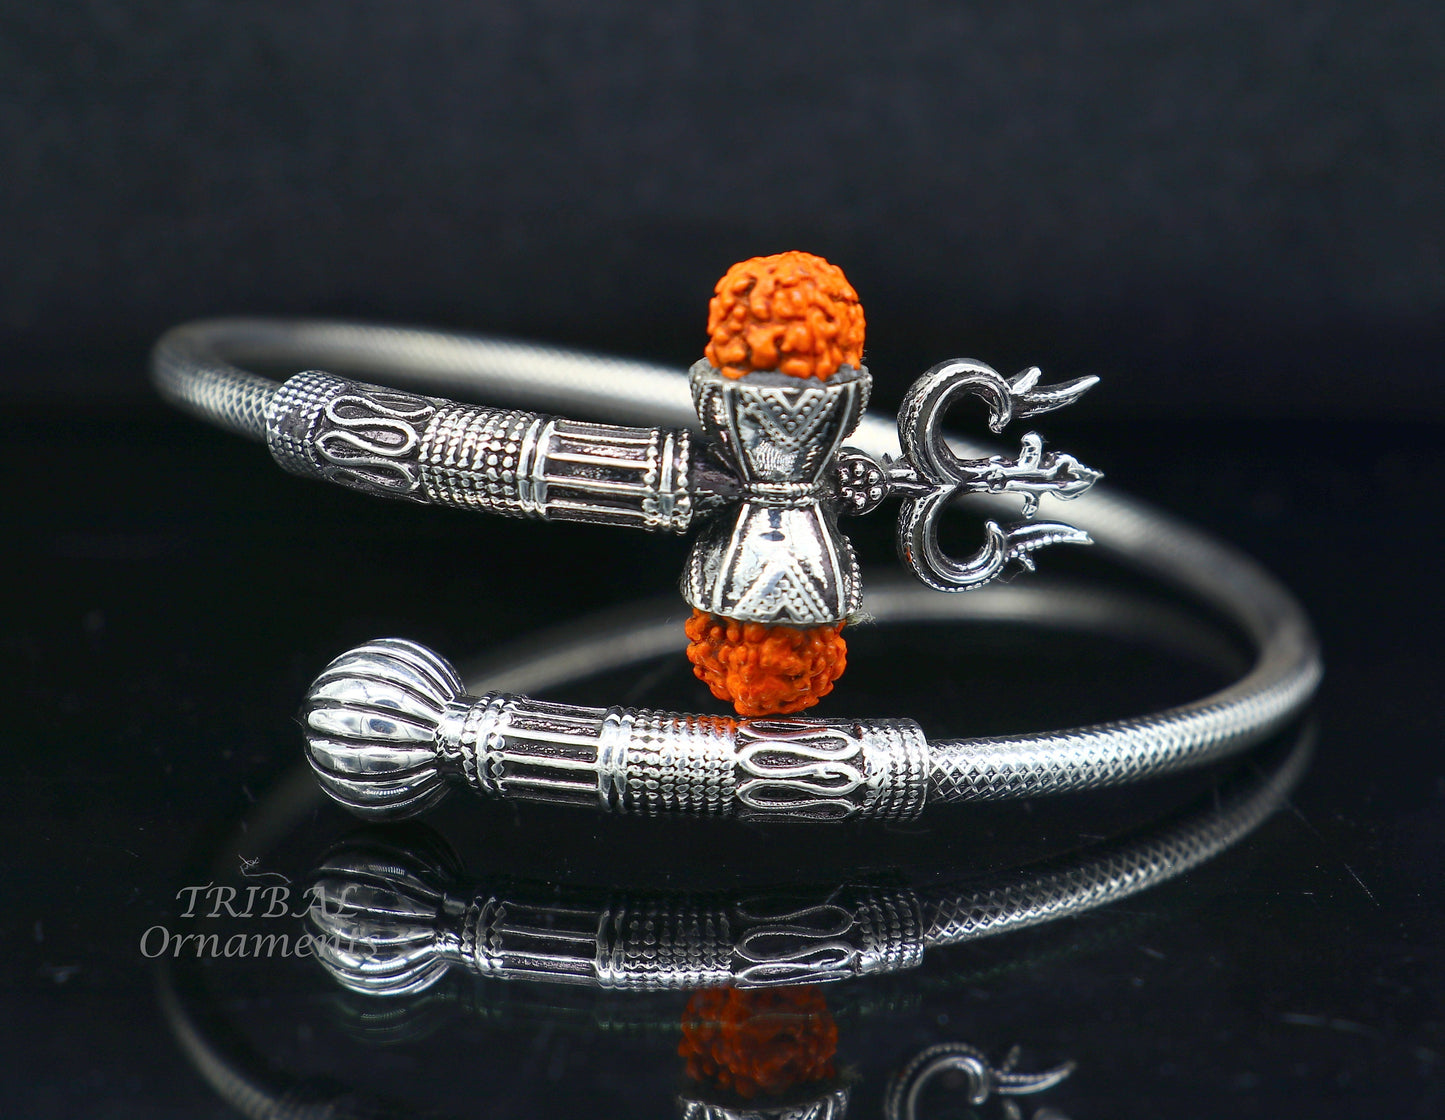 925 sterling silver handmade Shiva Trishul bangle bracelet Rudraksha kada, excellent Bahubali trident kada bracelet gift nsk534 - TRIBAL ORNAMENTS